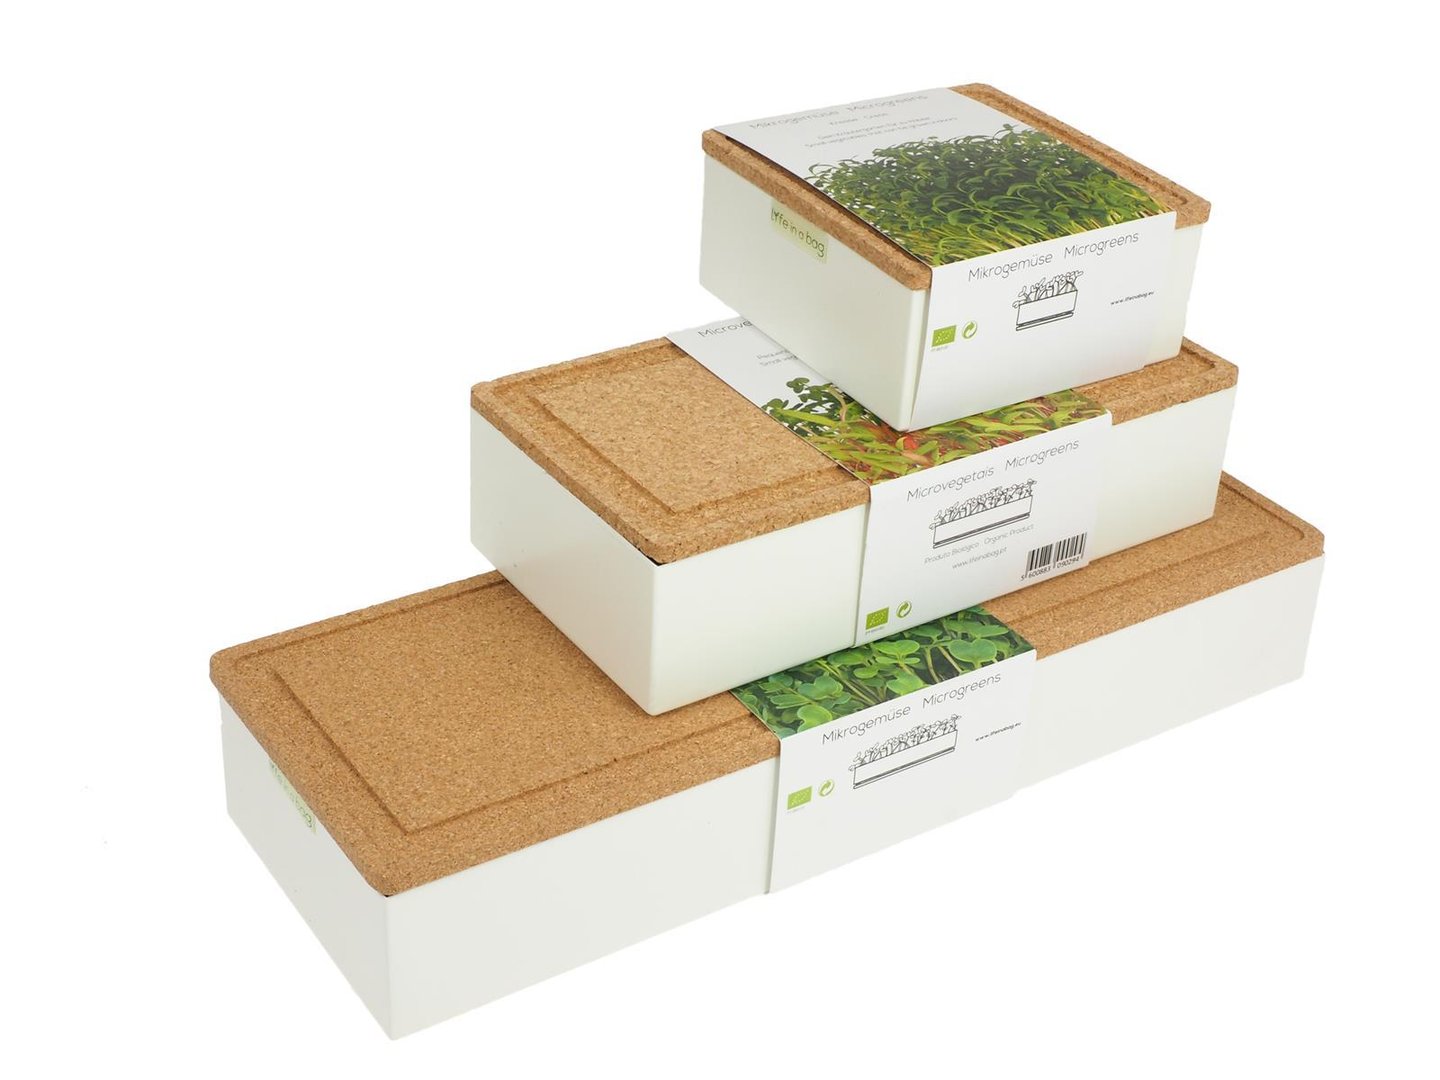 Seed tray Microgreens